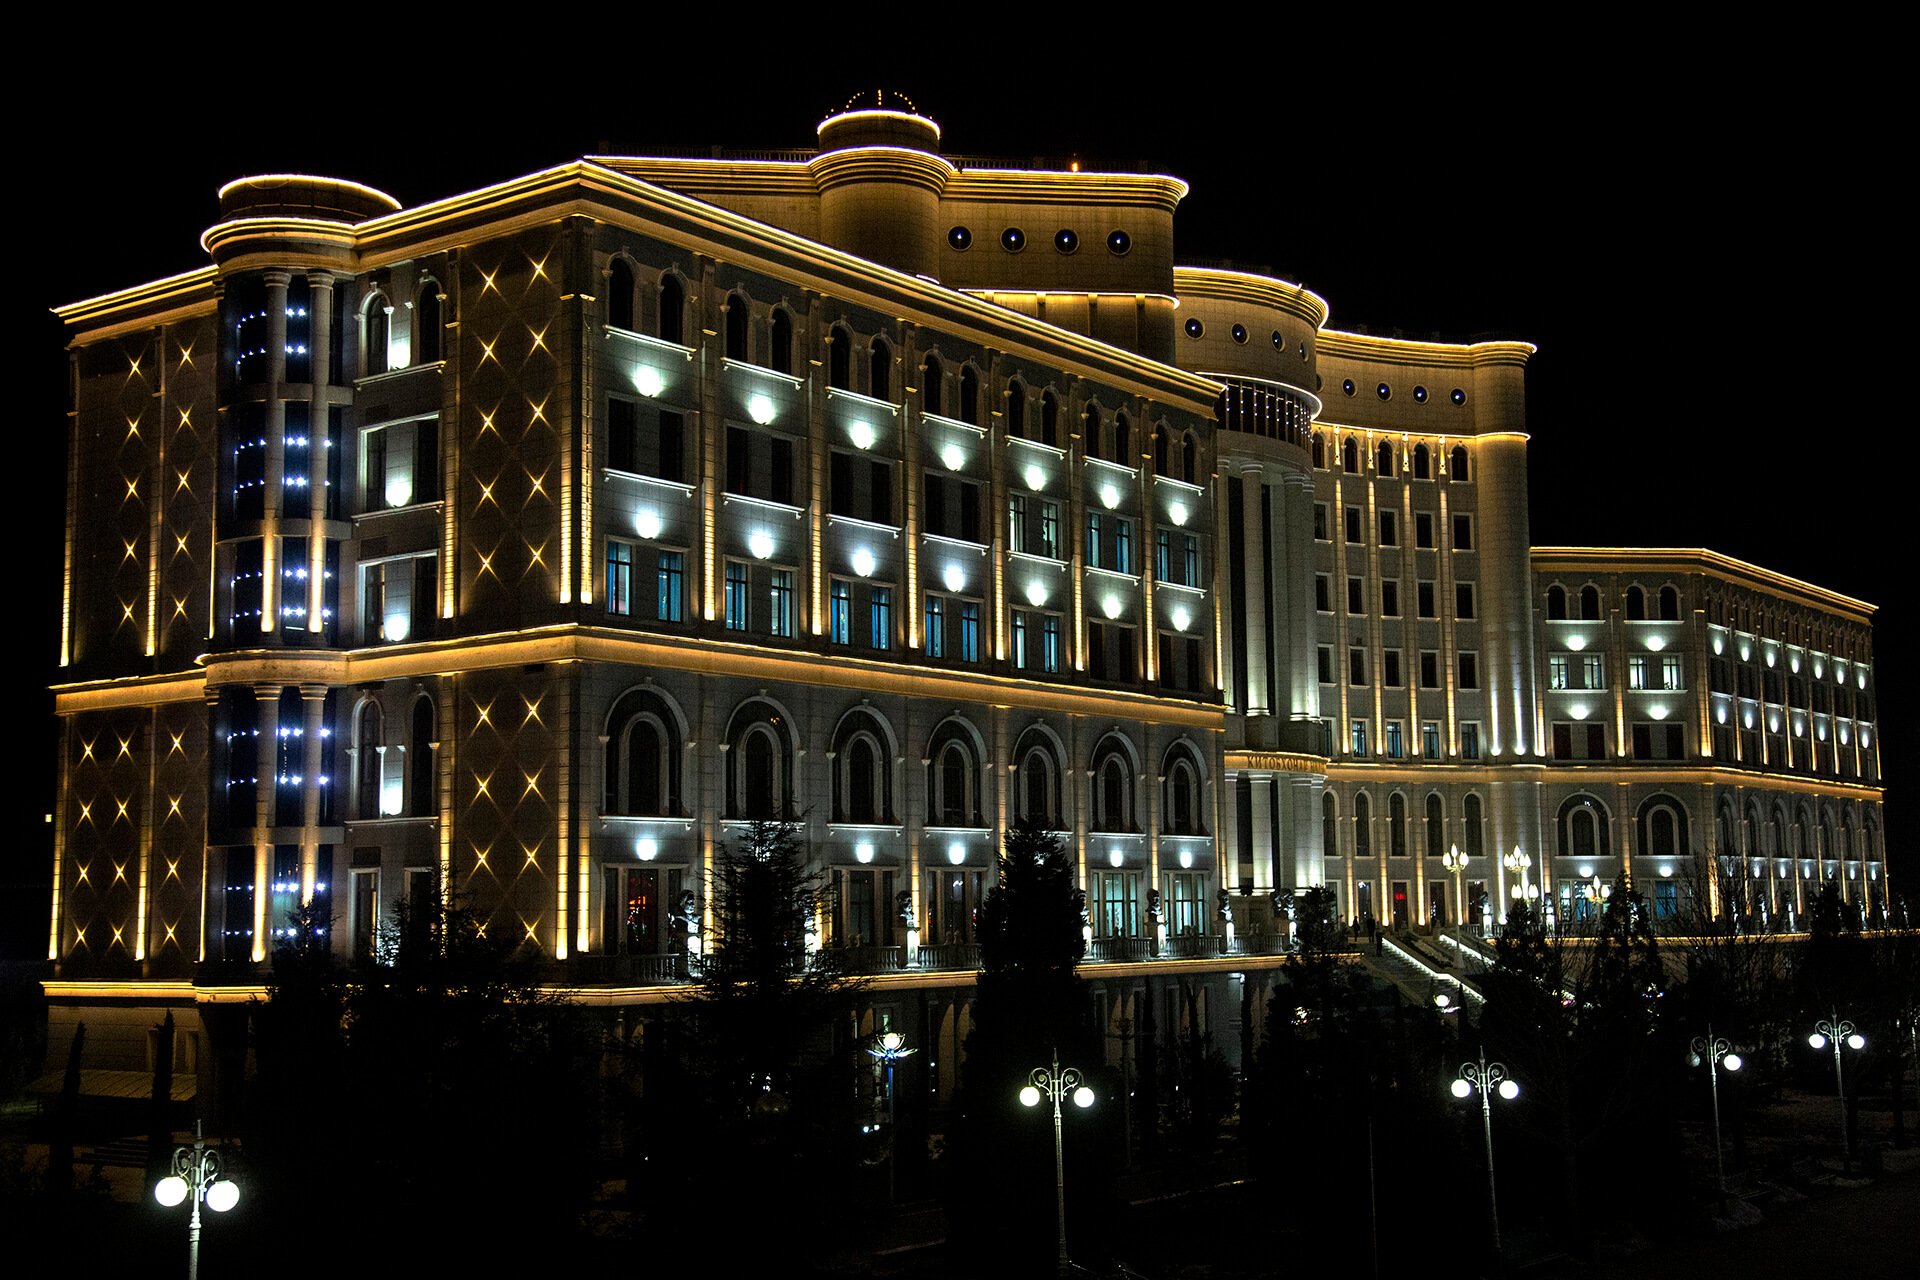 Свет в душанбе. Подсветка зданий Душанбе. Архитектурная подсветка здания мэрии Набережные Челны. Архитектурная подсветка зданий. Архитектурная подсветка фасадов.